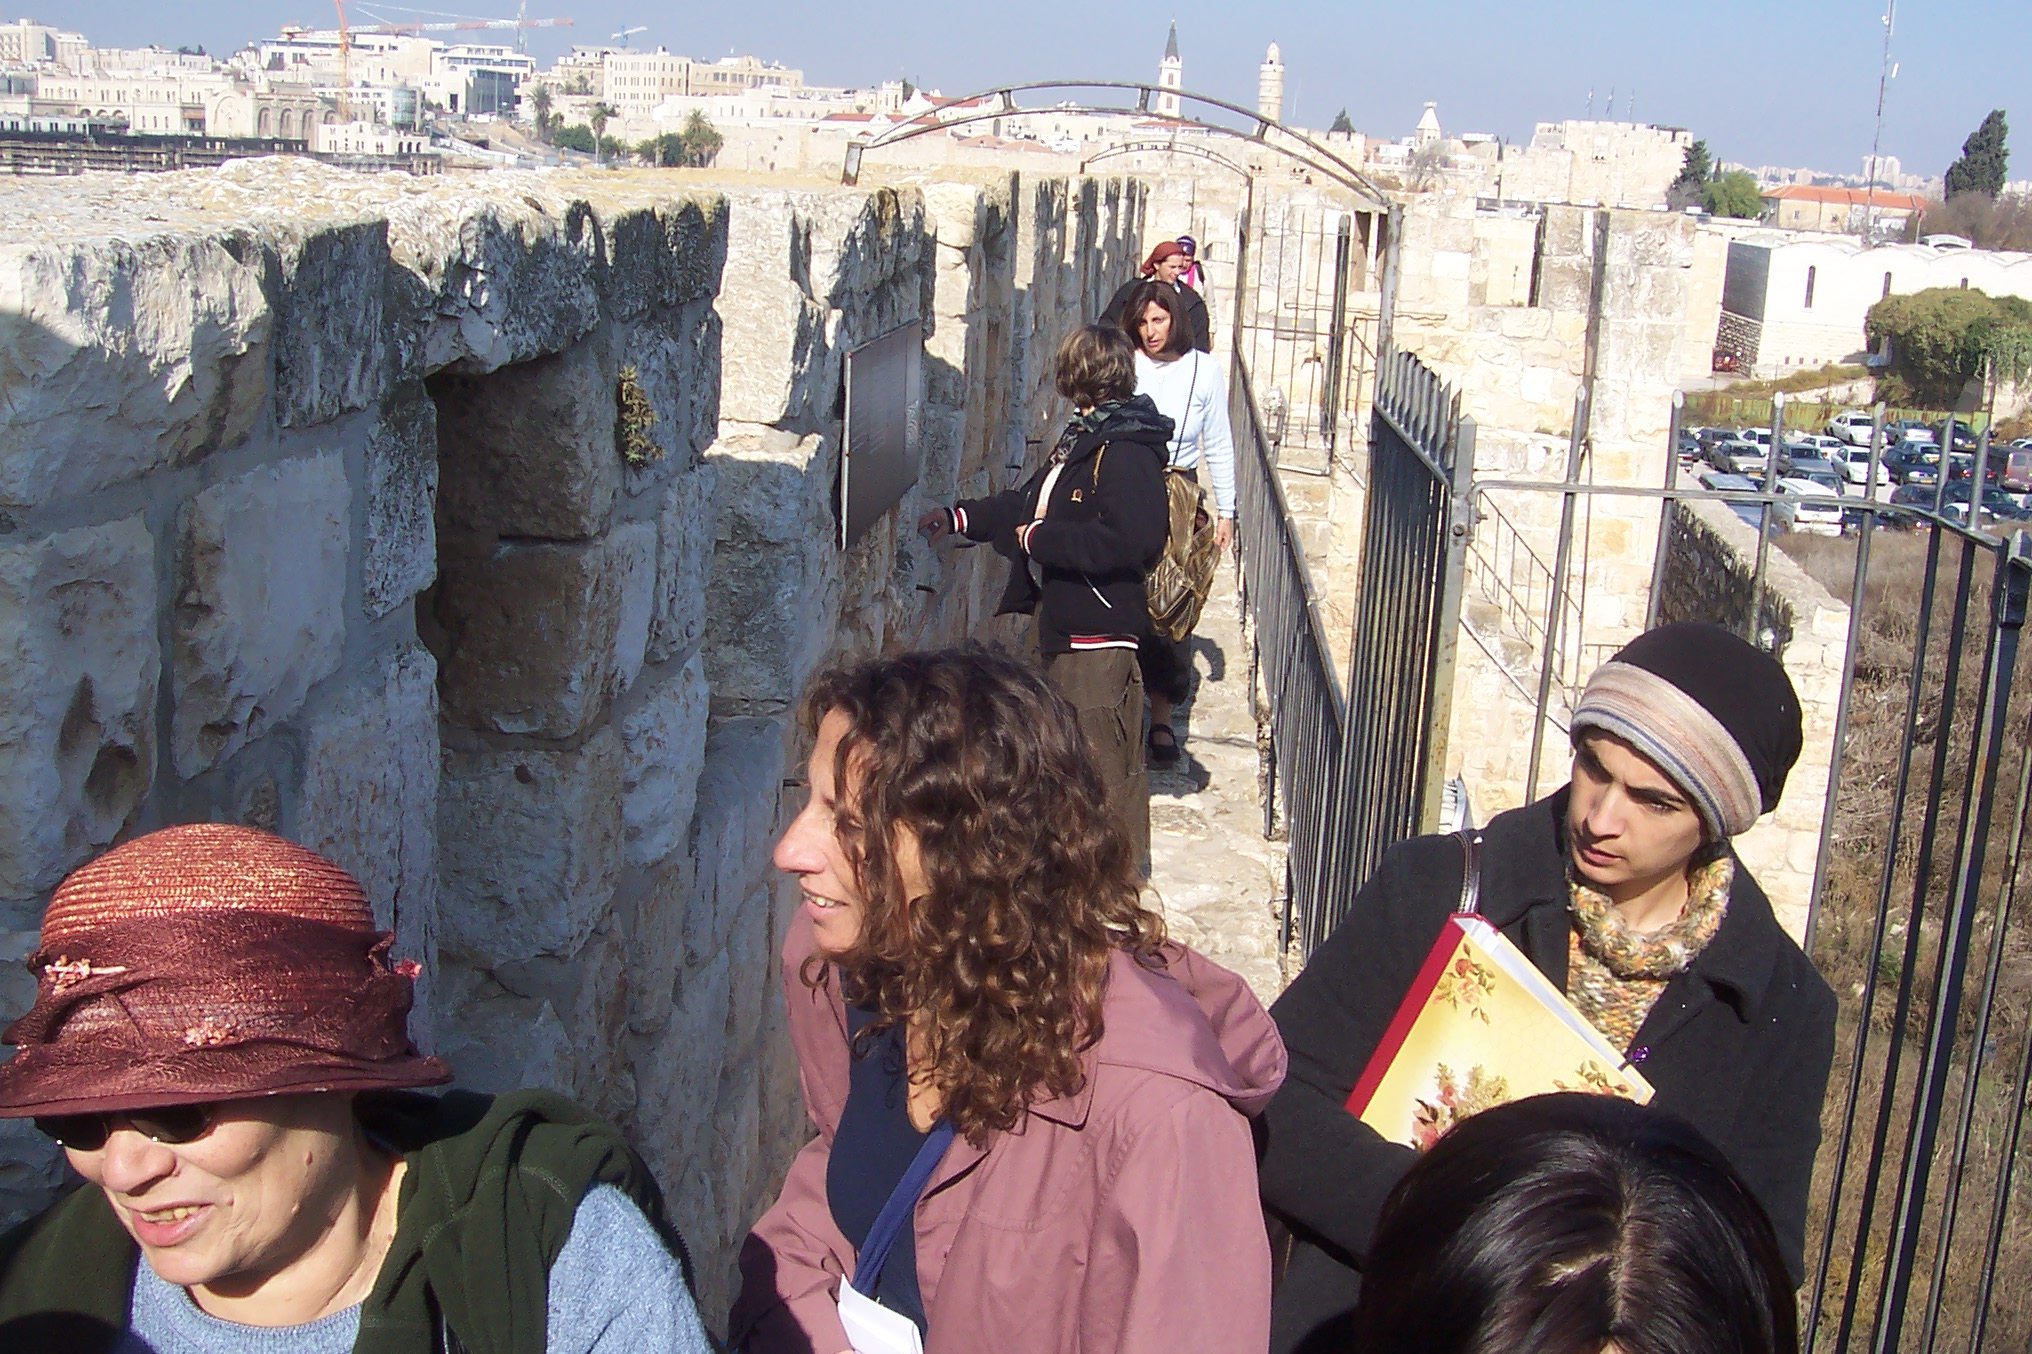 טיילת חומות בירושלים (צילום: ד"ר ענת אביטל)